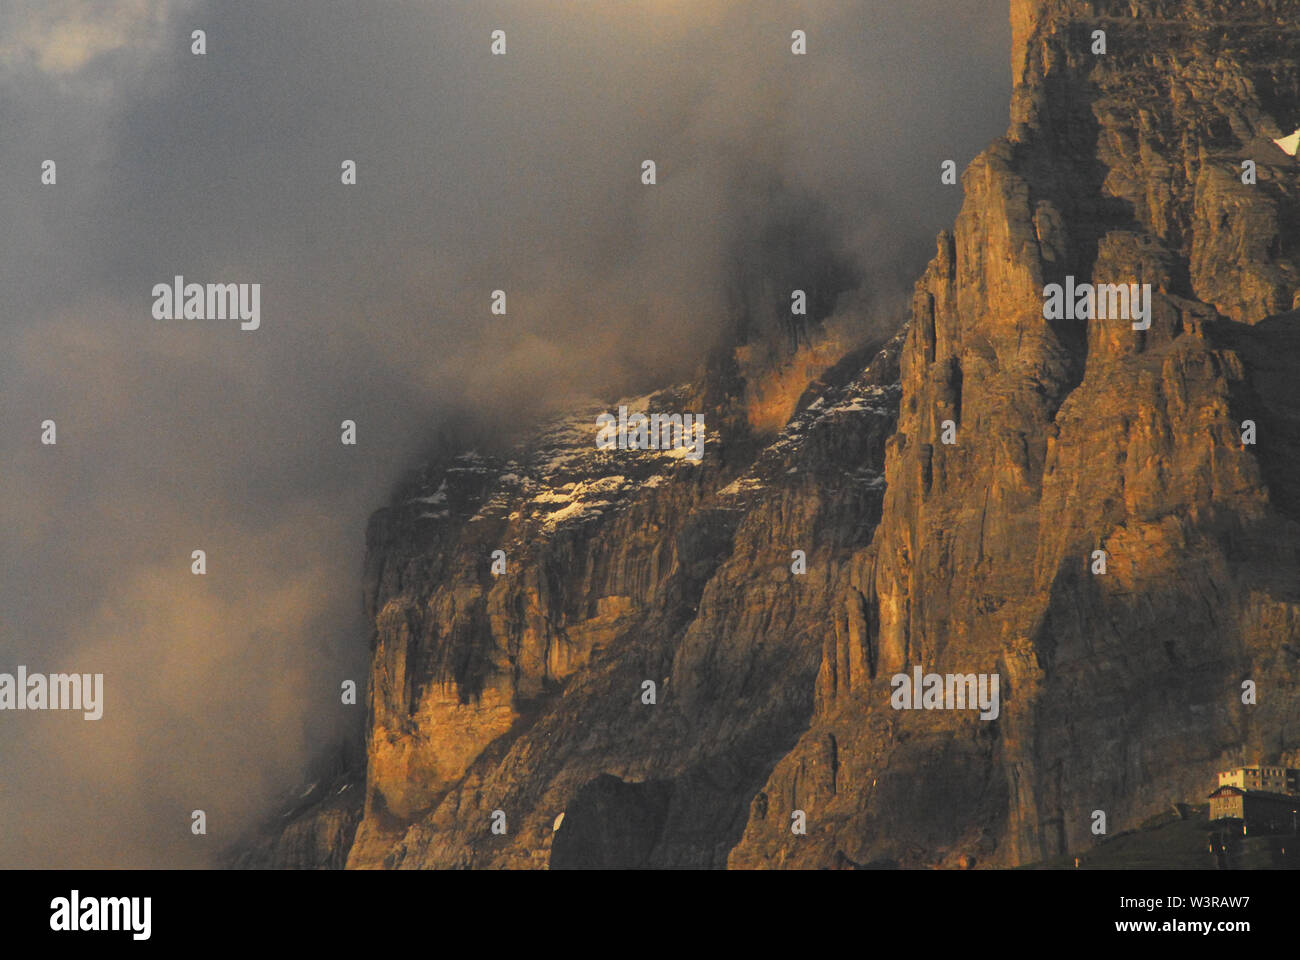 Vida de montaña en los Alpes Suizos. Nota Los edificios de un pueblo en la parte inferior derecha. Una imponente montaña en increíble luz del atardecer. Foto de stock